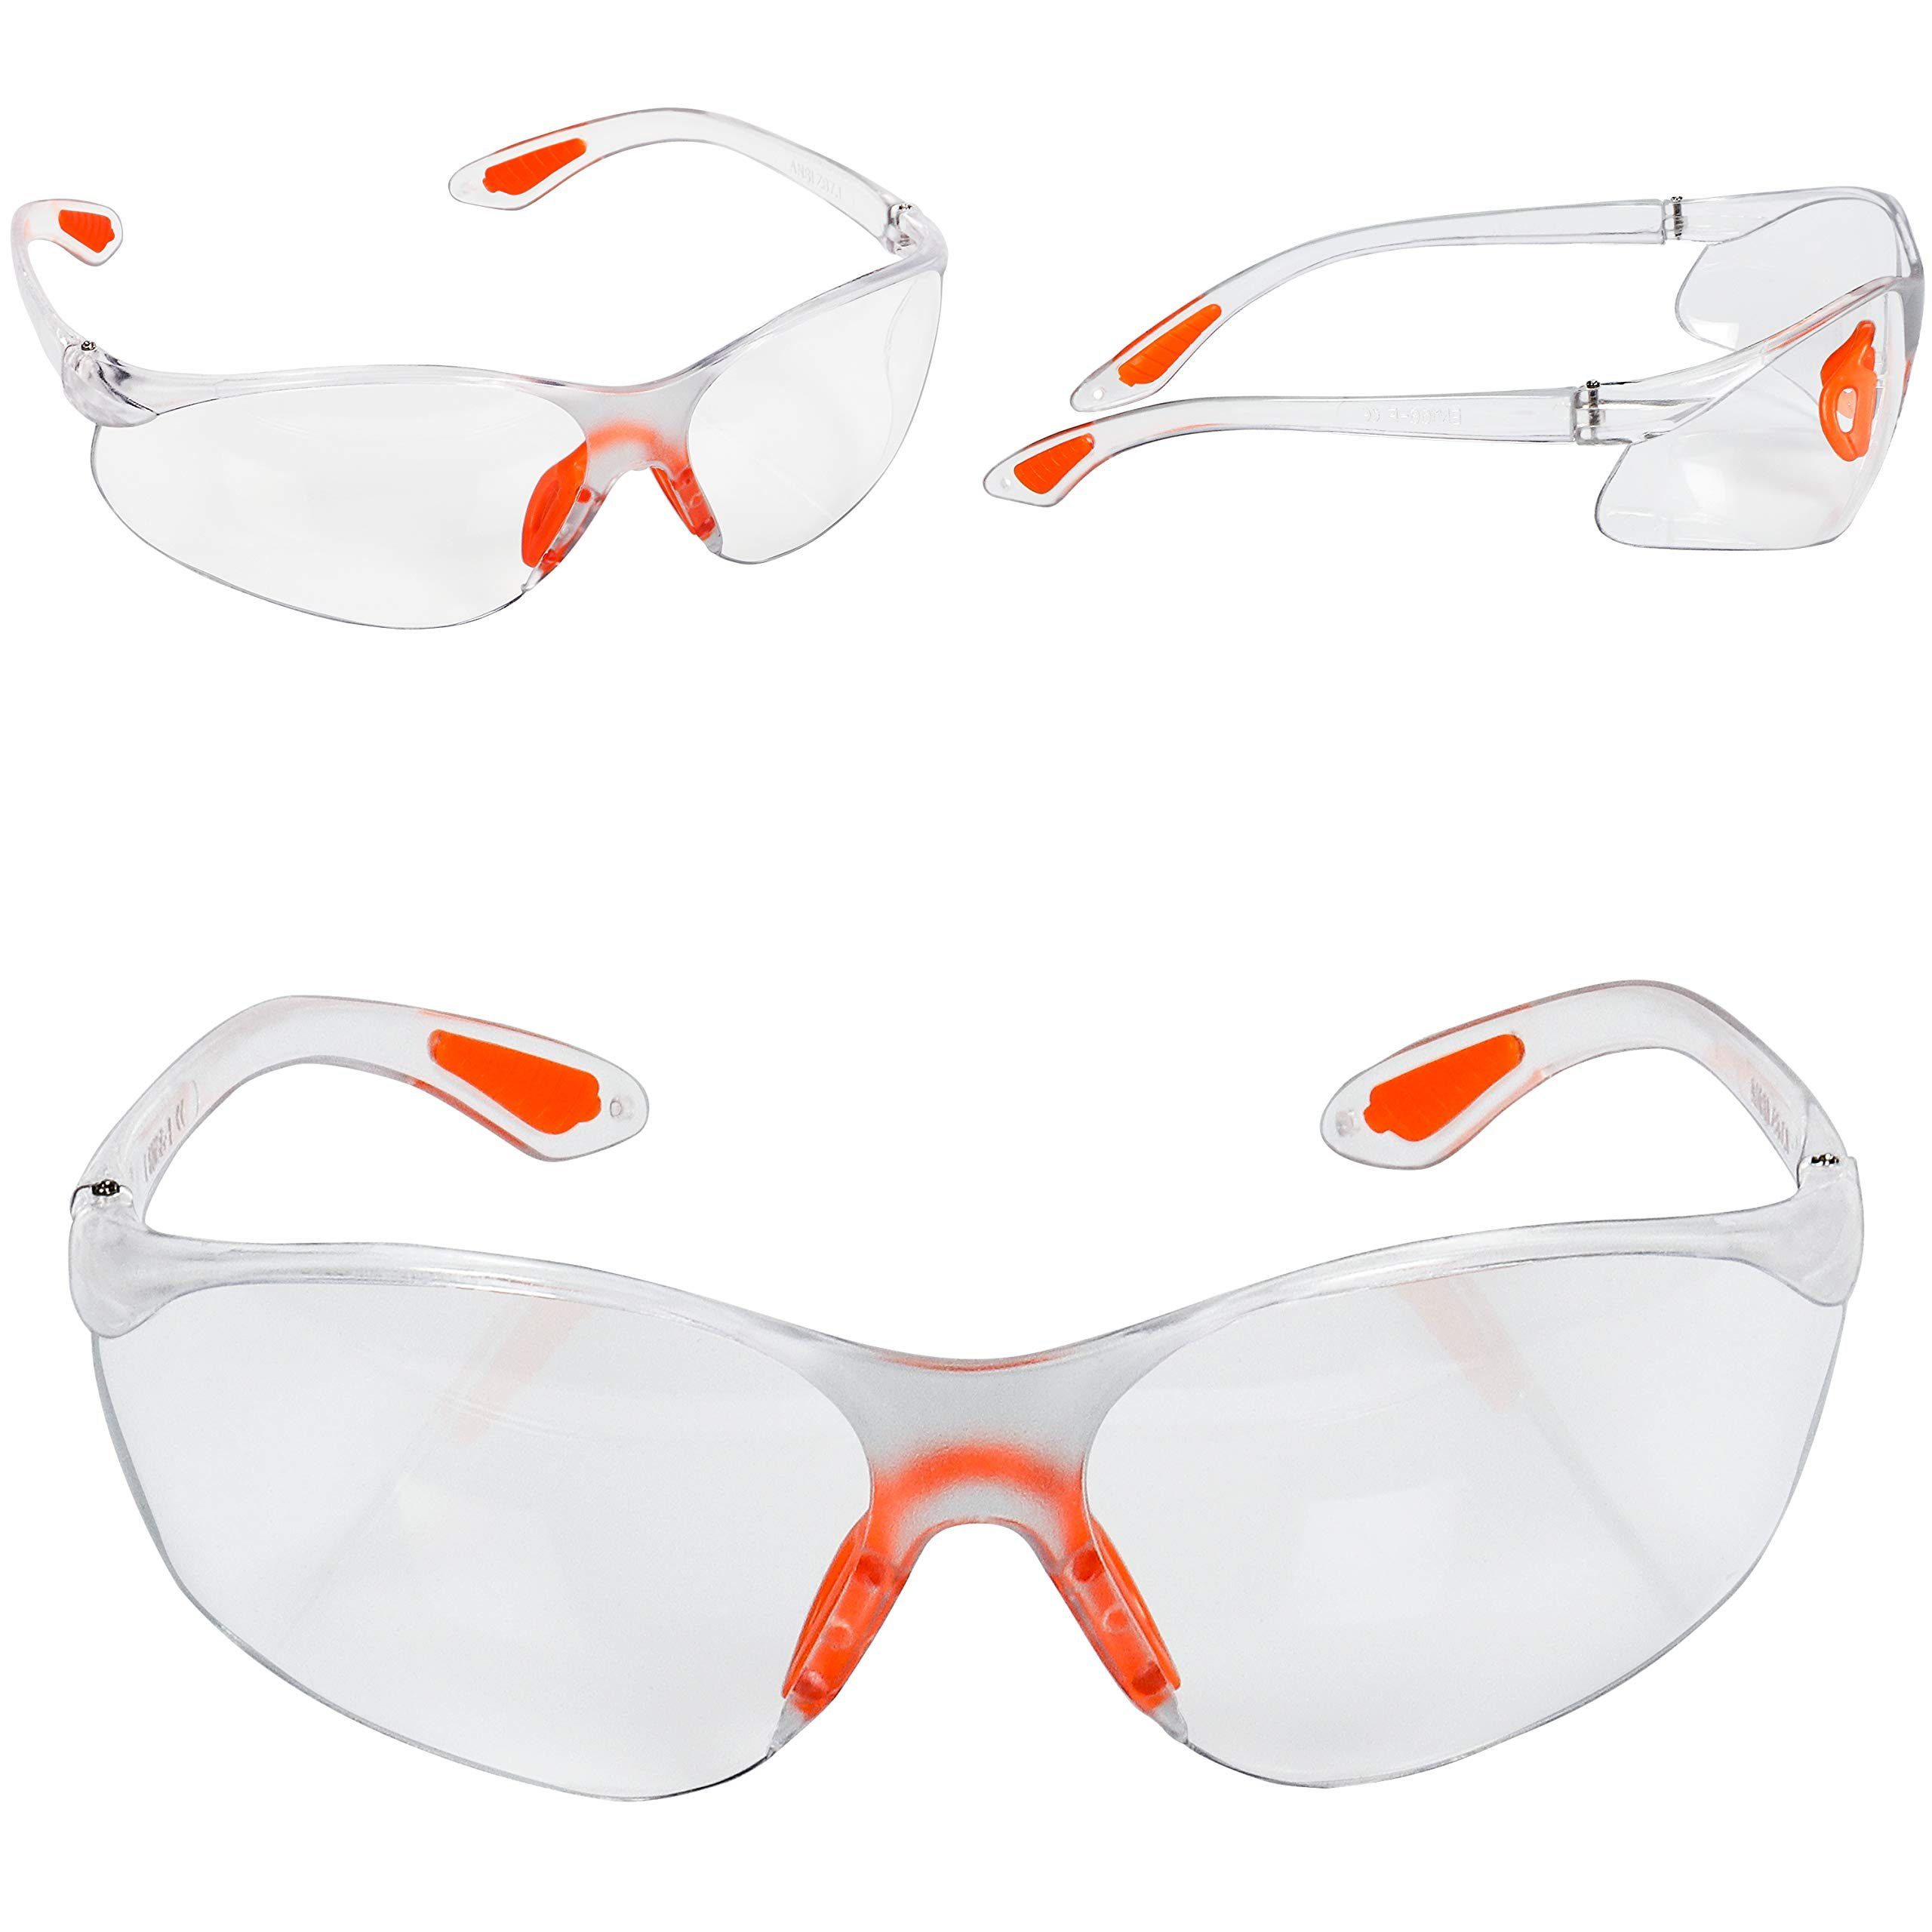 Schutzbrillen Gummieinsatz Kurtzy mit für 24er für Pack sicheren Schutzbrillen mit Augenschutz sicheren Augenschutz, Pack 24er Arbeitsschutzbrille Gummi